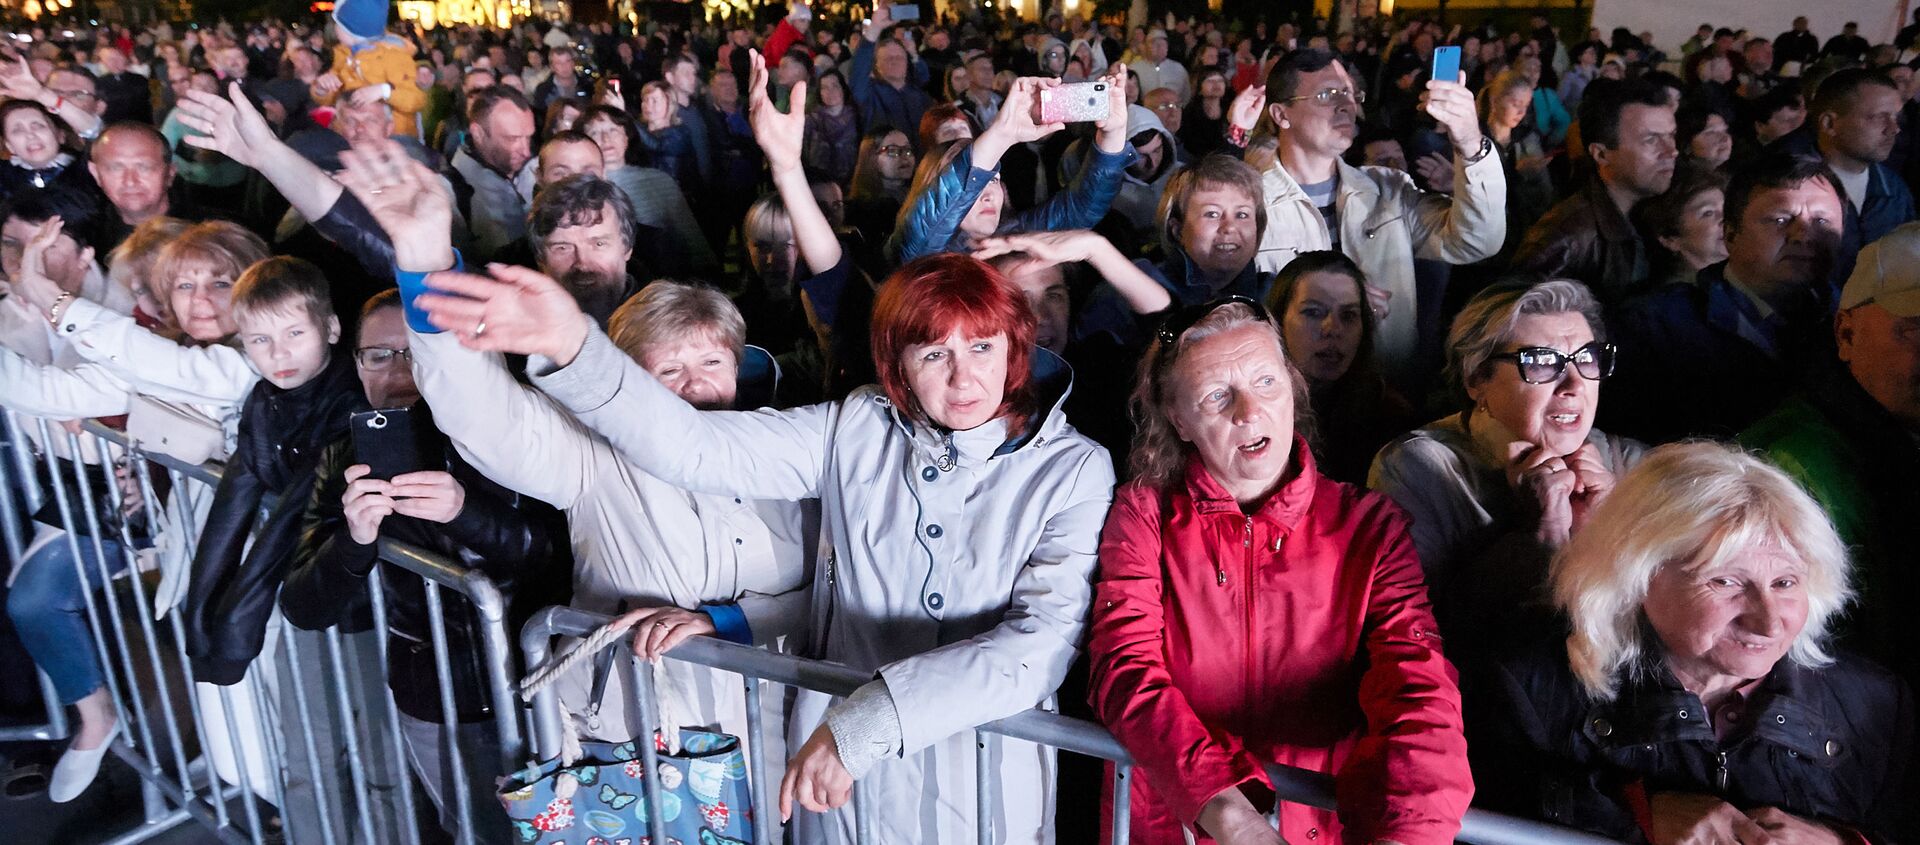 Зрители на концерте в Ялте в 2019 году - Sputnik Узбекистан, 1920, 30.04.2020